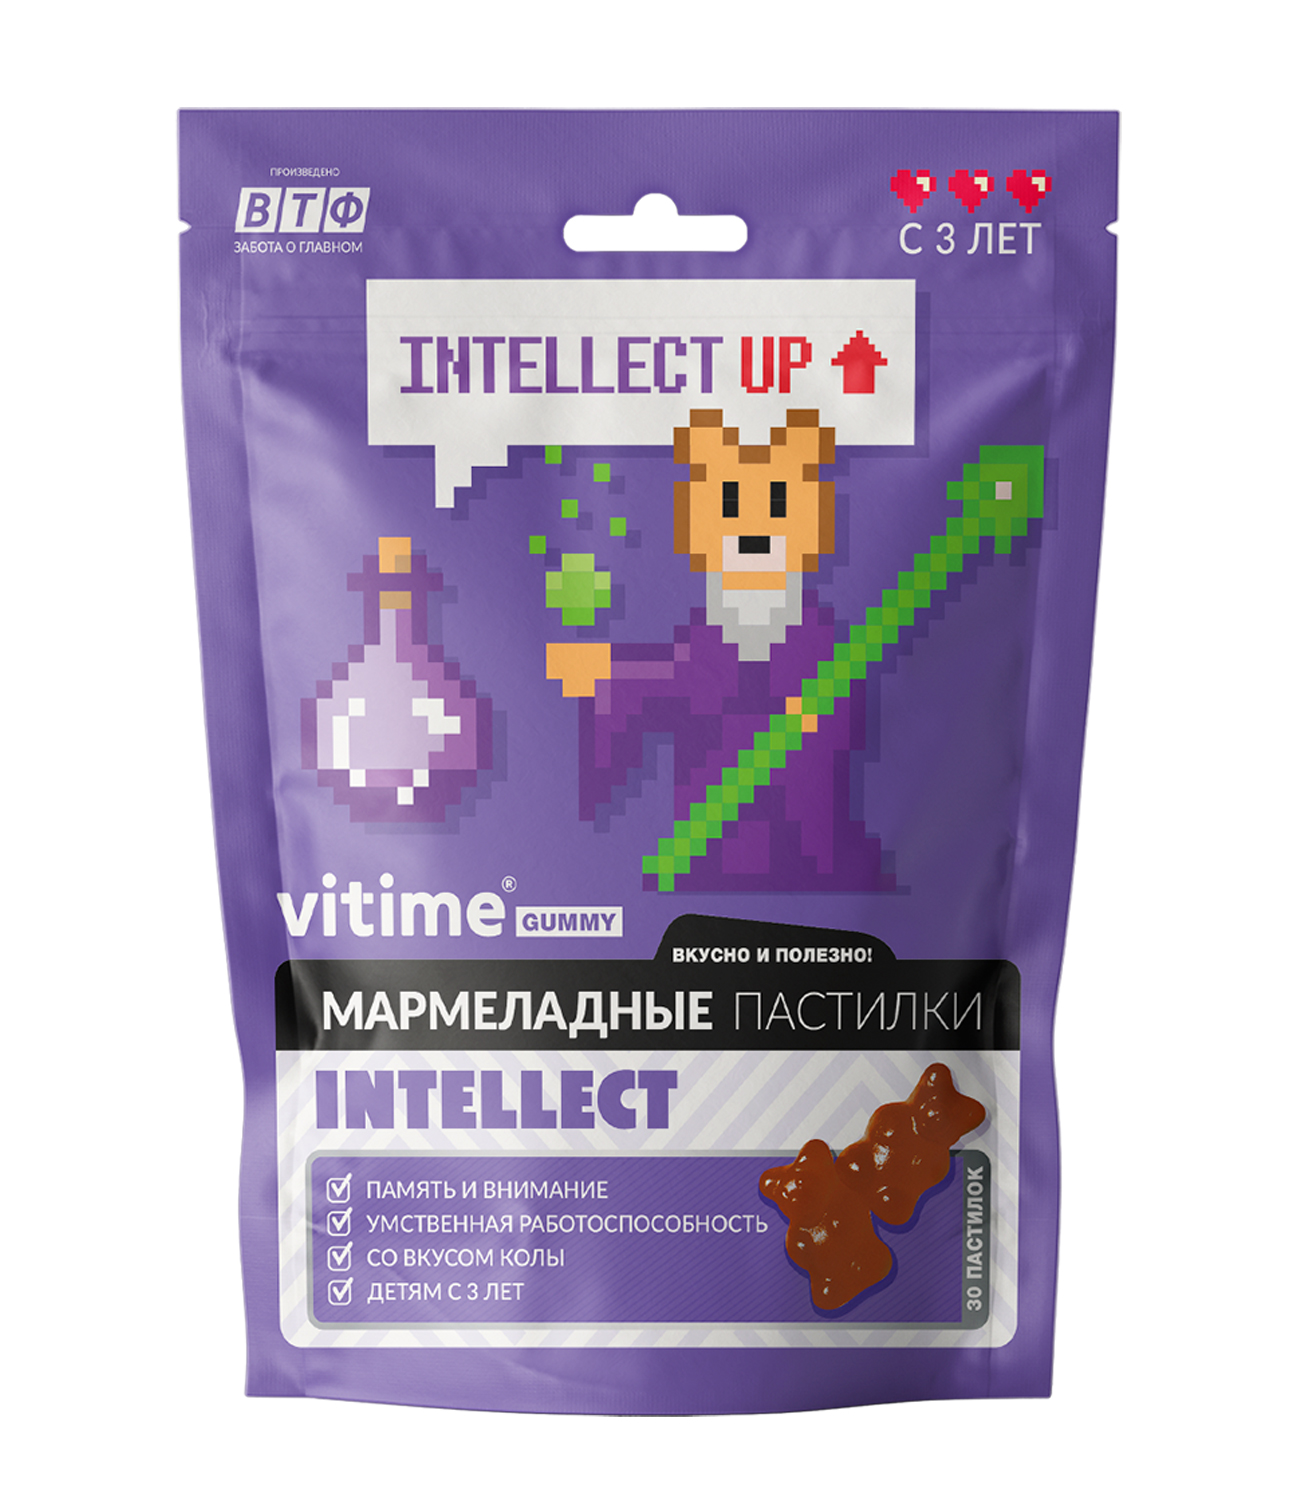 Биологически активная добавка Vitime Gummy Интеллект 30*2.5г - фото 1